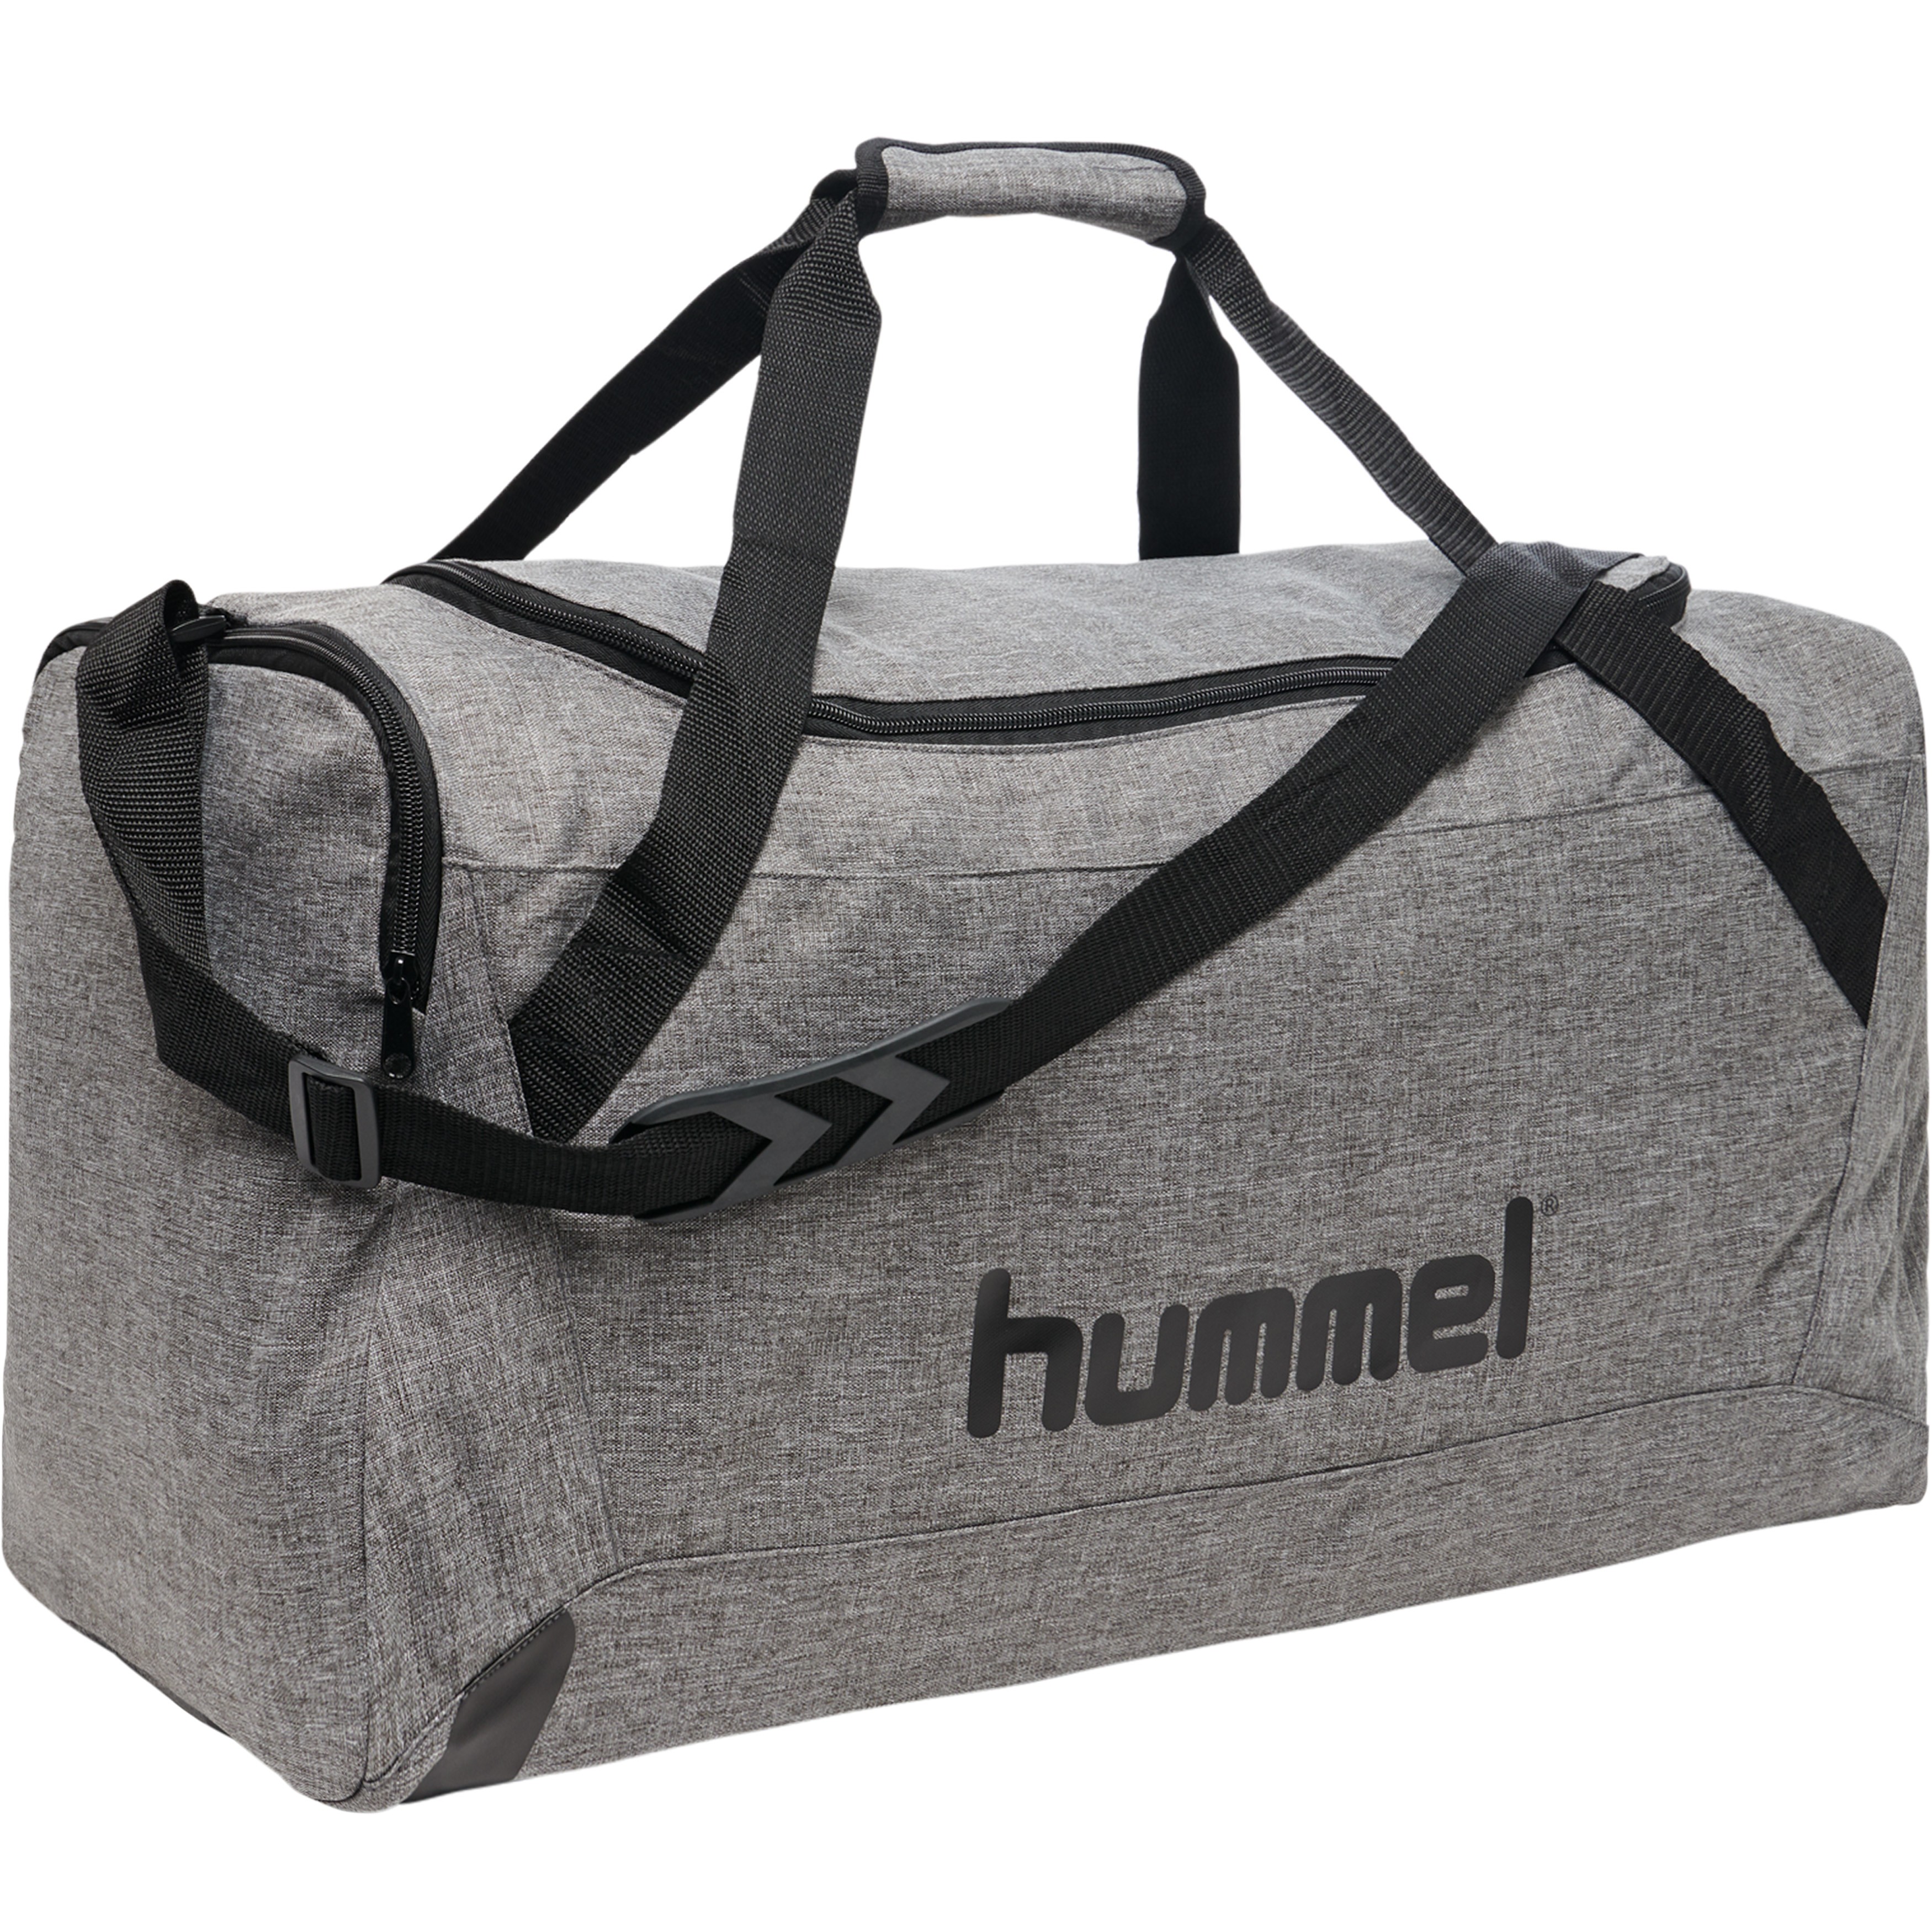 Hummel Core Sport Tasche